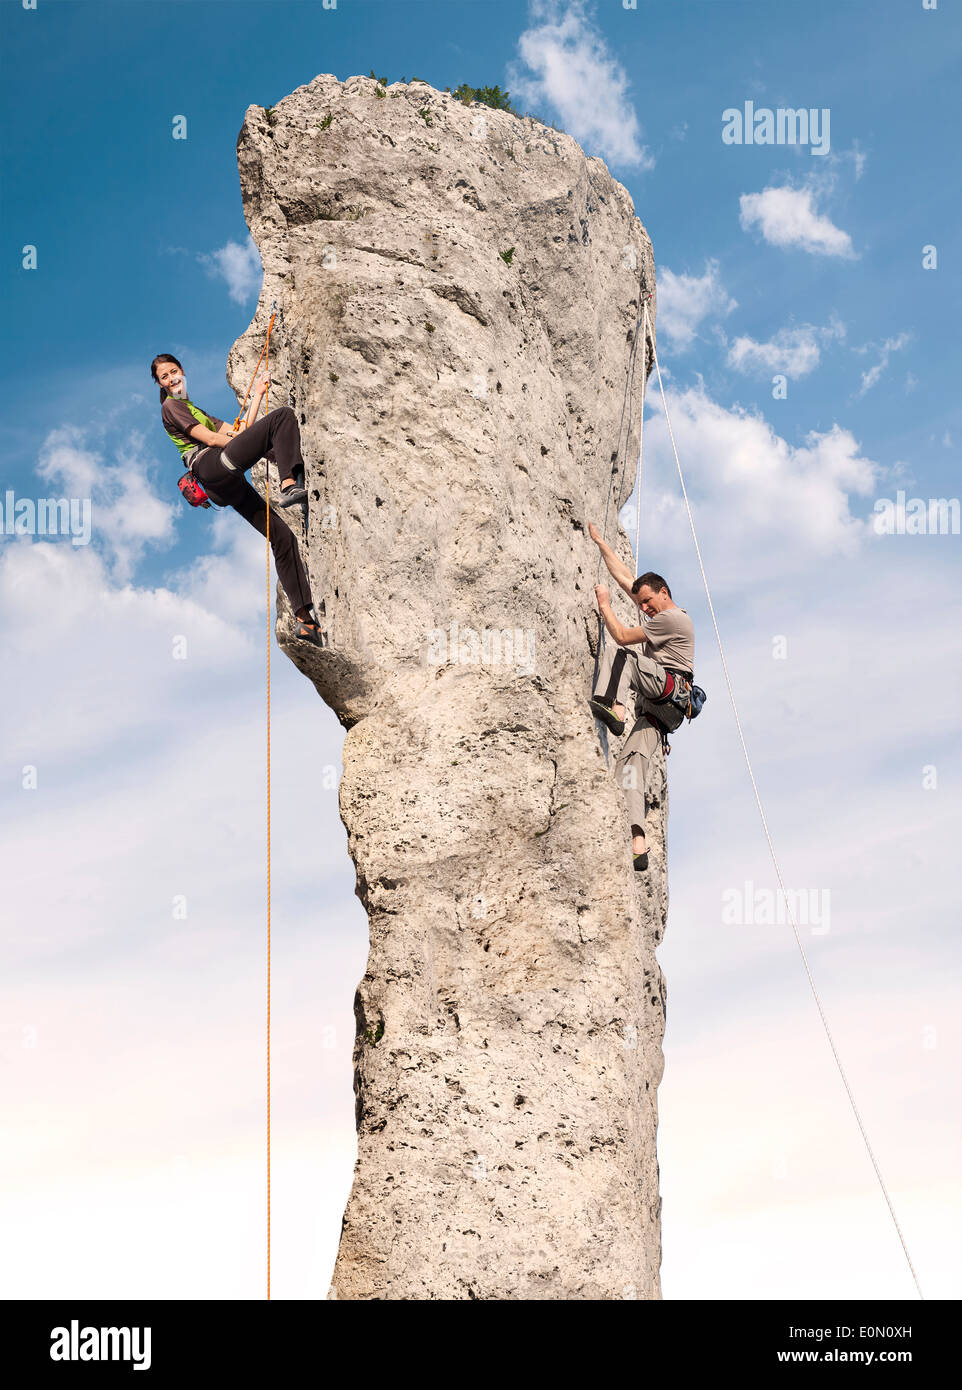 Kletterer in Aktion, junge Frau und Mann, die schwierigen Fels klettern. Stockfoto